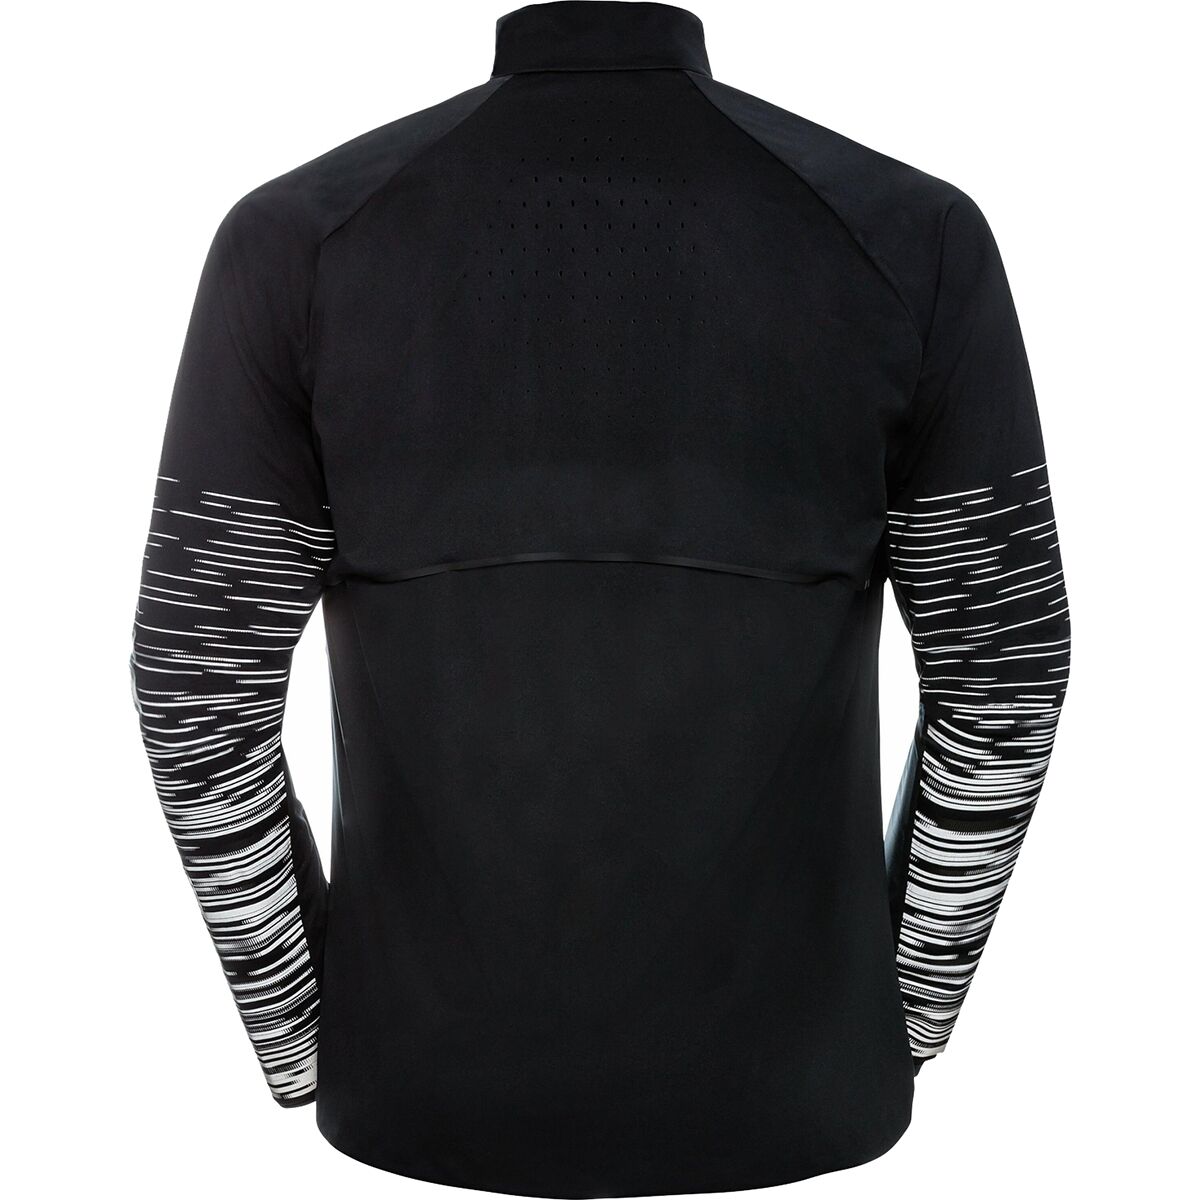 ODLO Zeroweight Pro Warm Reflect Jacket - Men's - Clothing